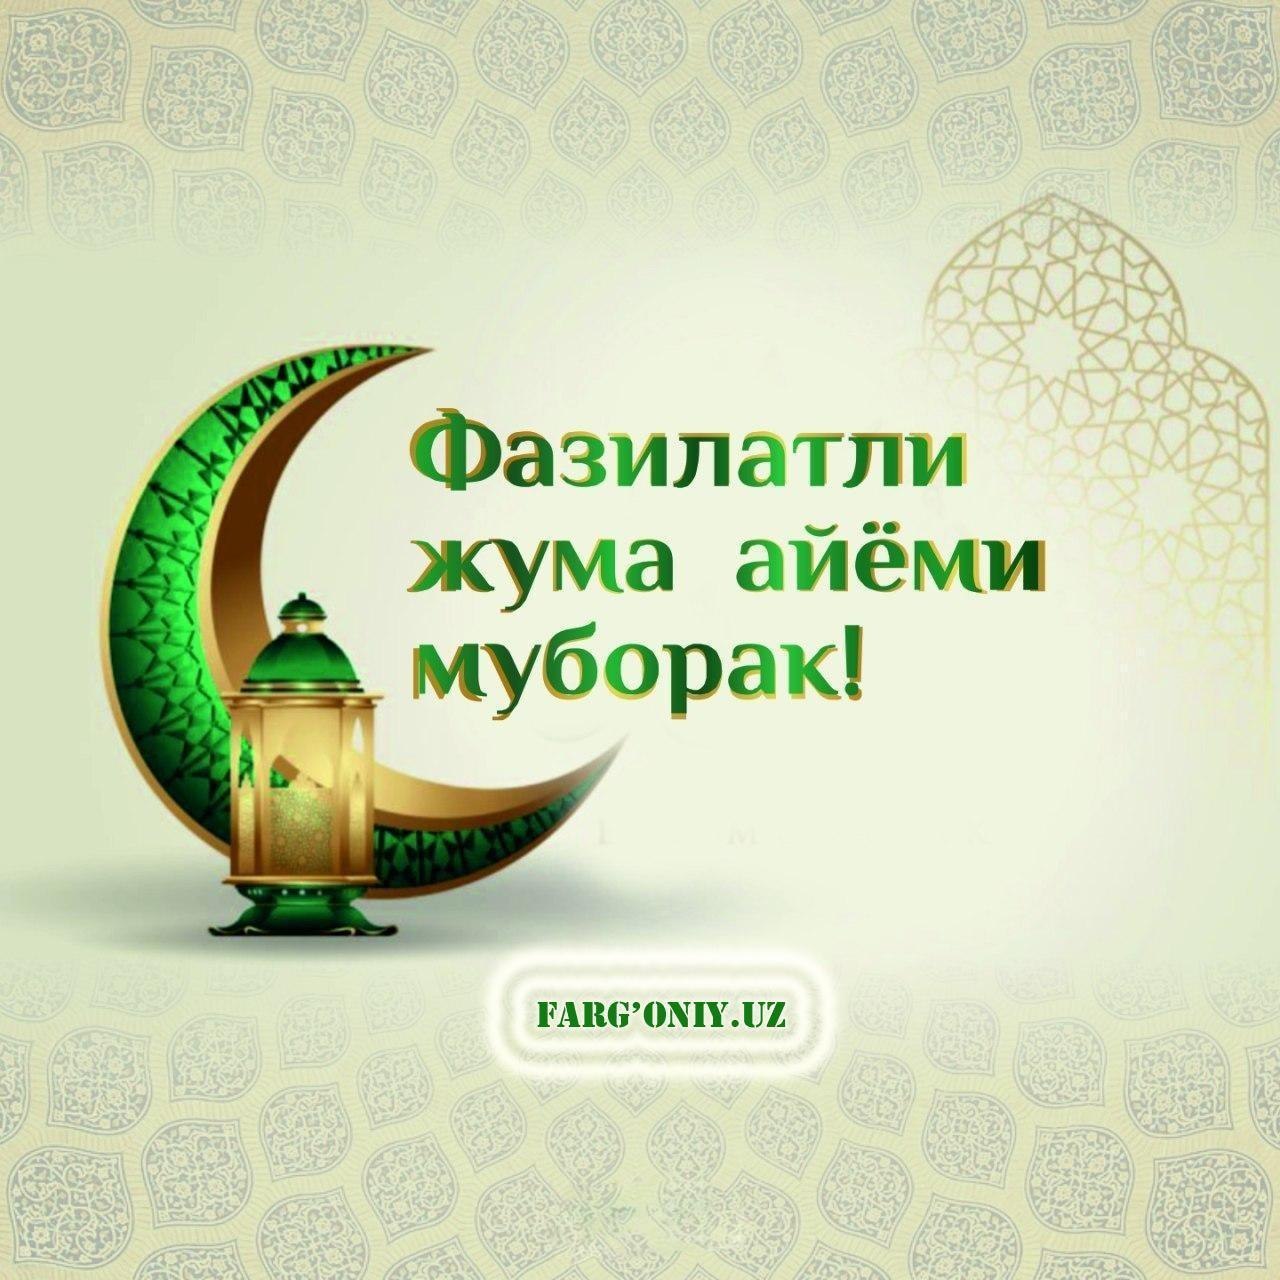 джума мубарак картинки узбекском языке